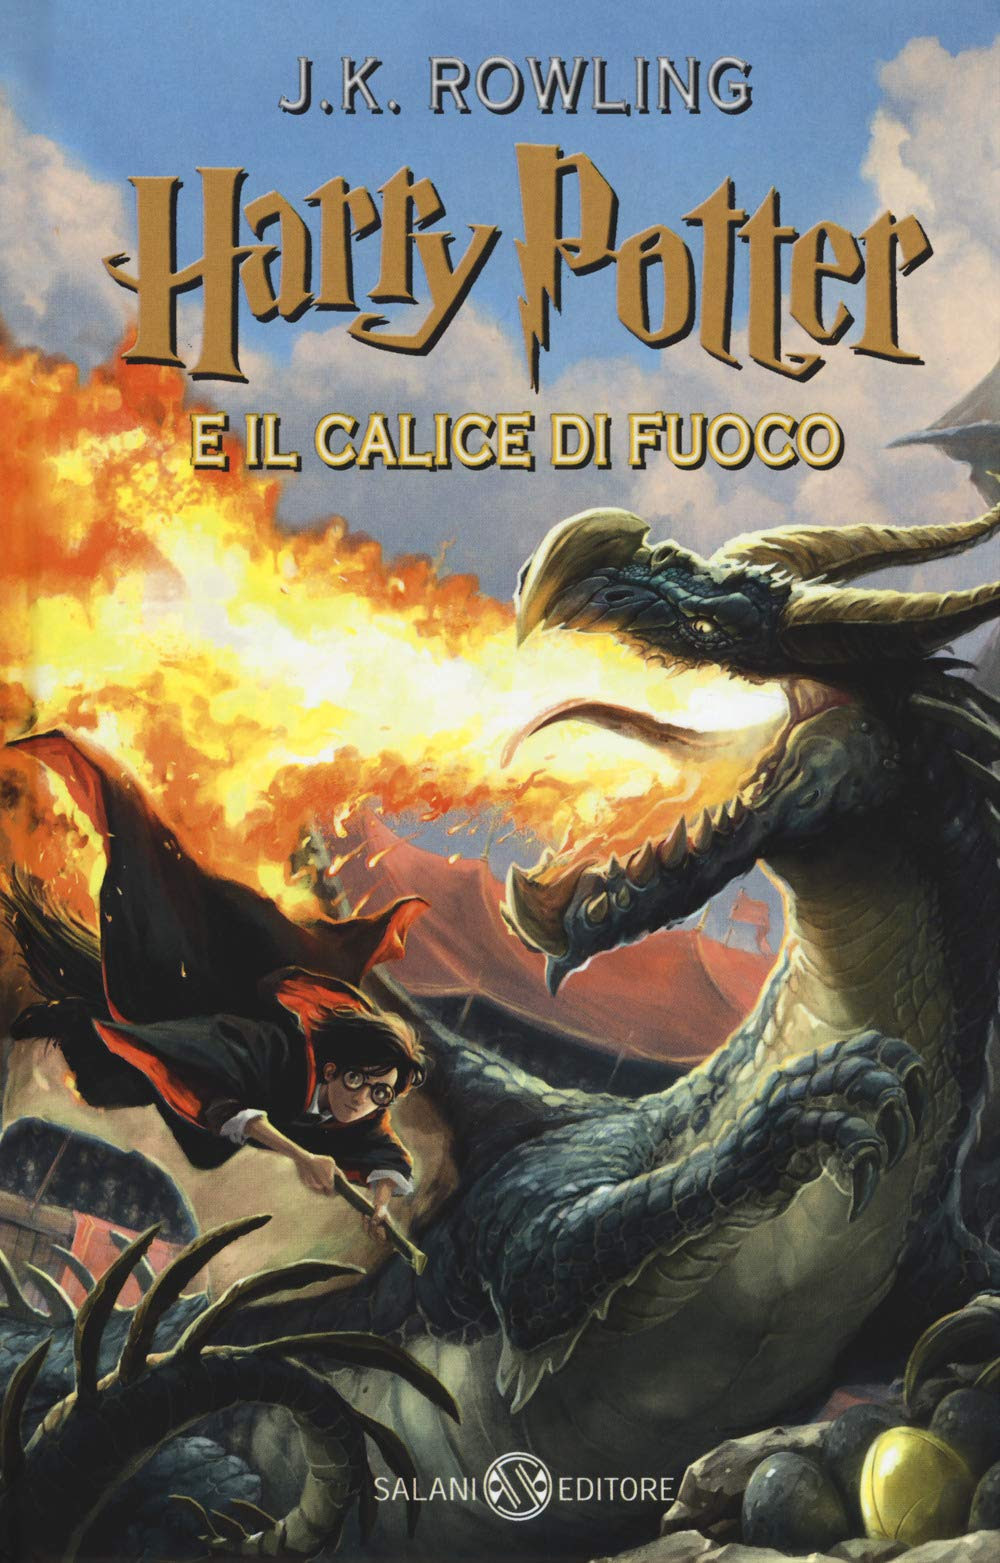 Harry Potter e il calice di fuoco in Kindle/PDF/EPUB